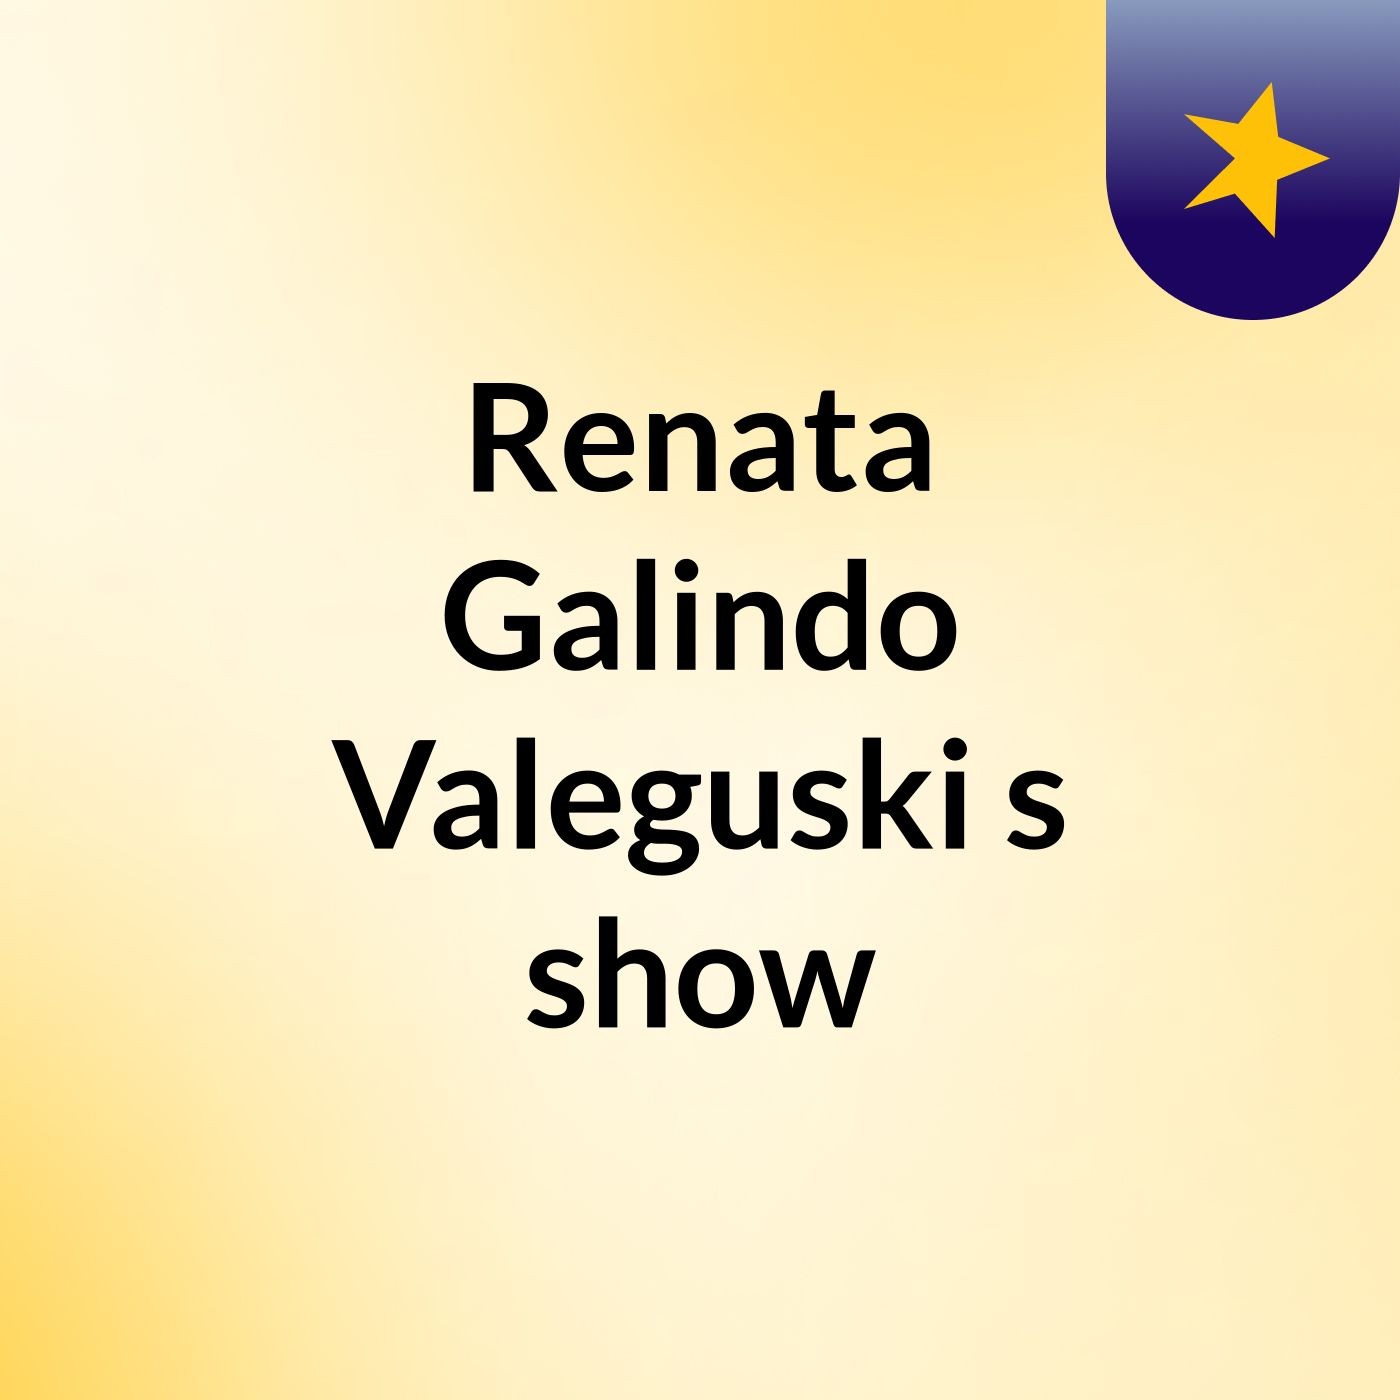 Renata Galindo Valeguski's show